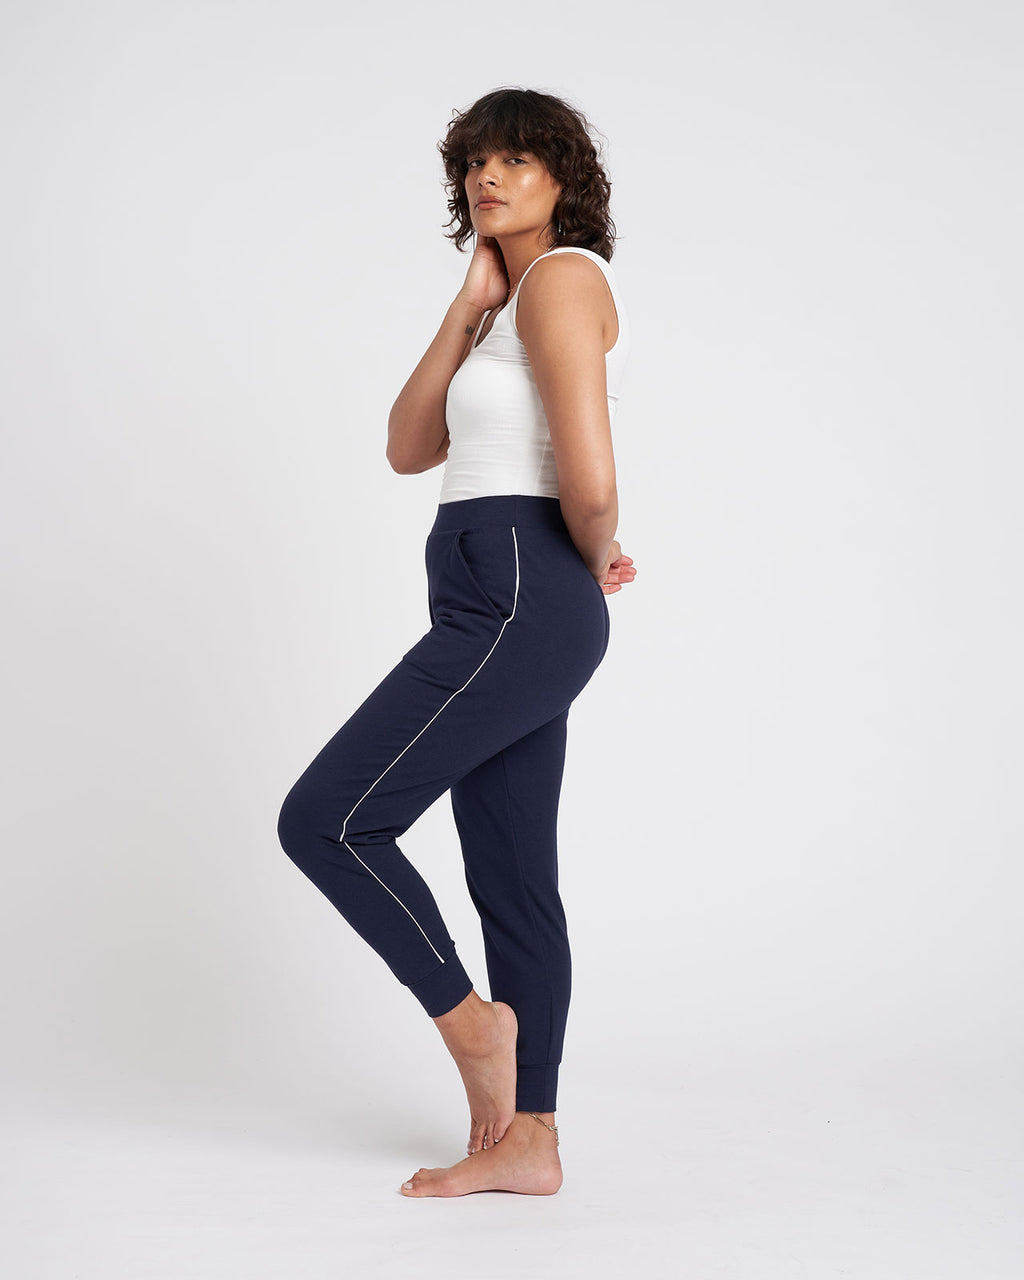 Blue Yoga Pants & Joggers - Women's Jogger Pants, Skinny Joggers